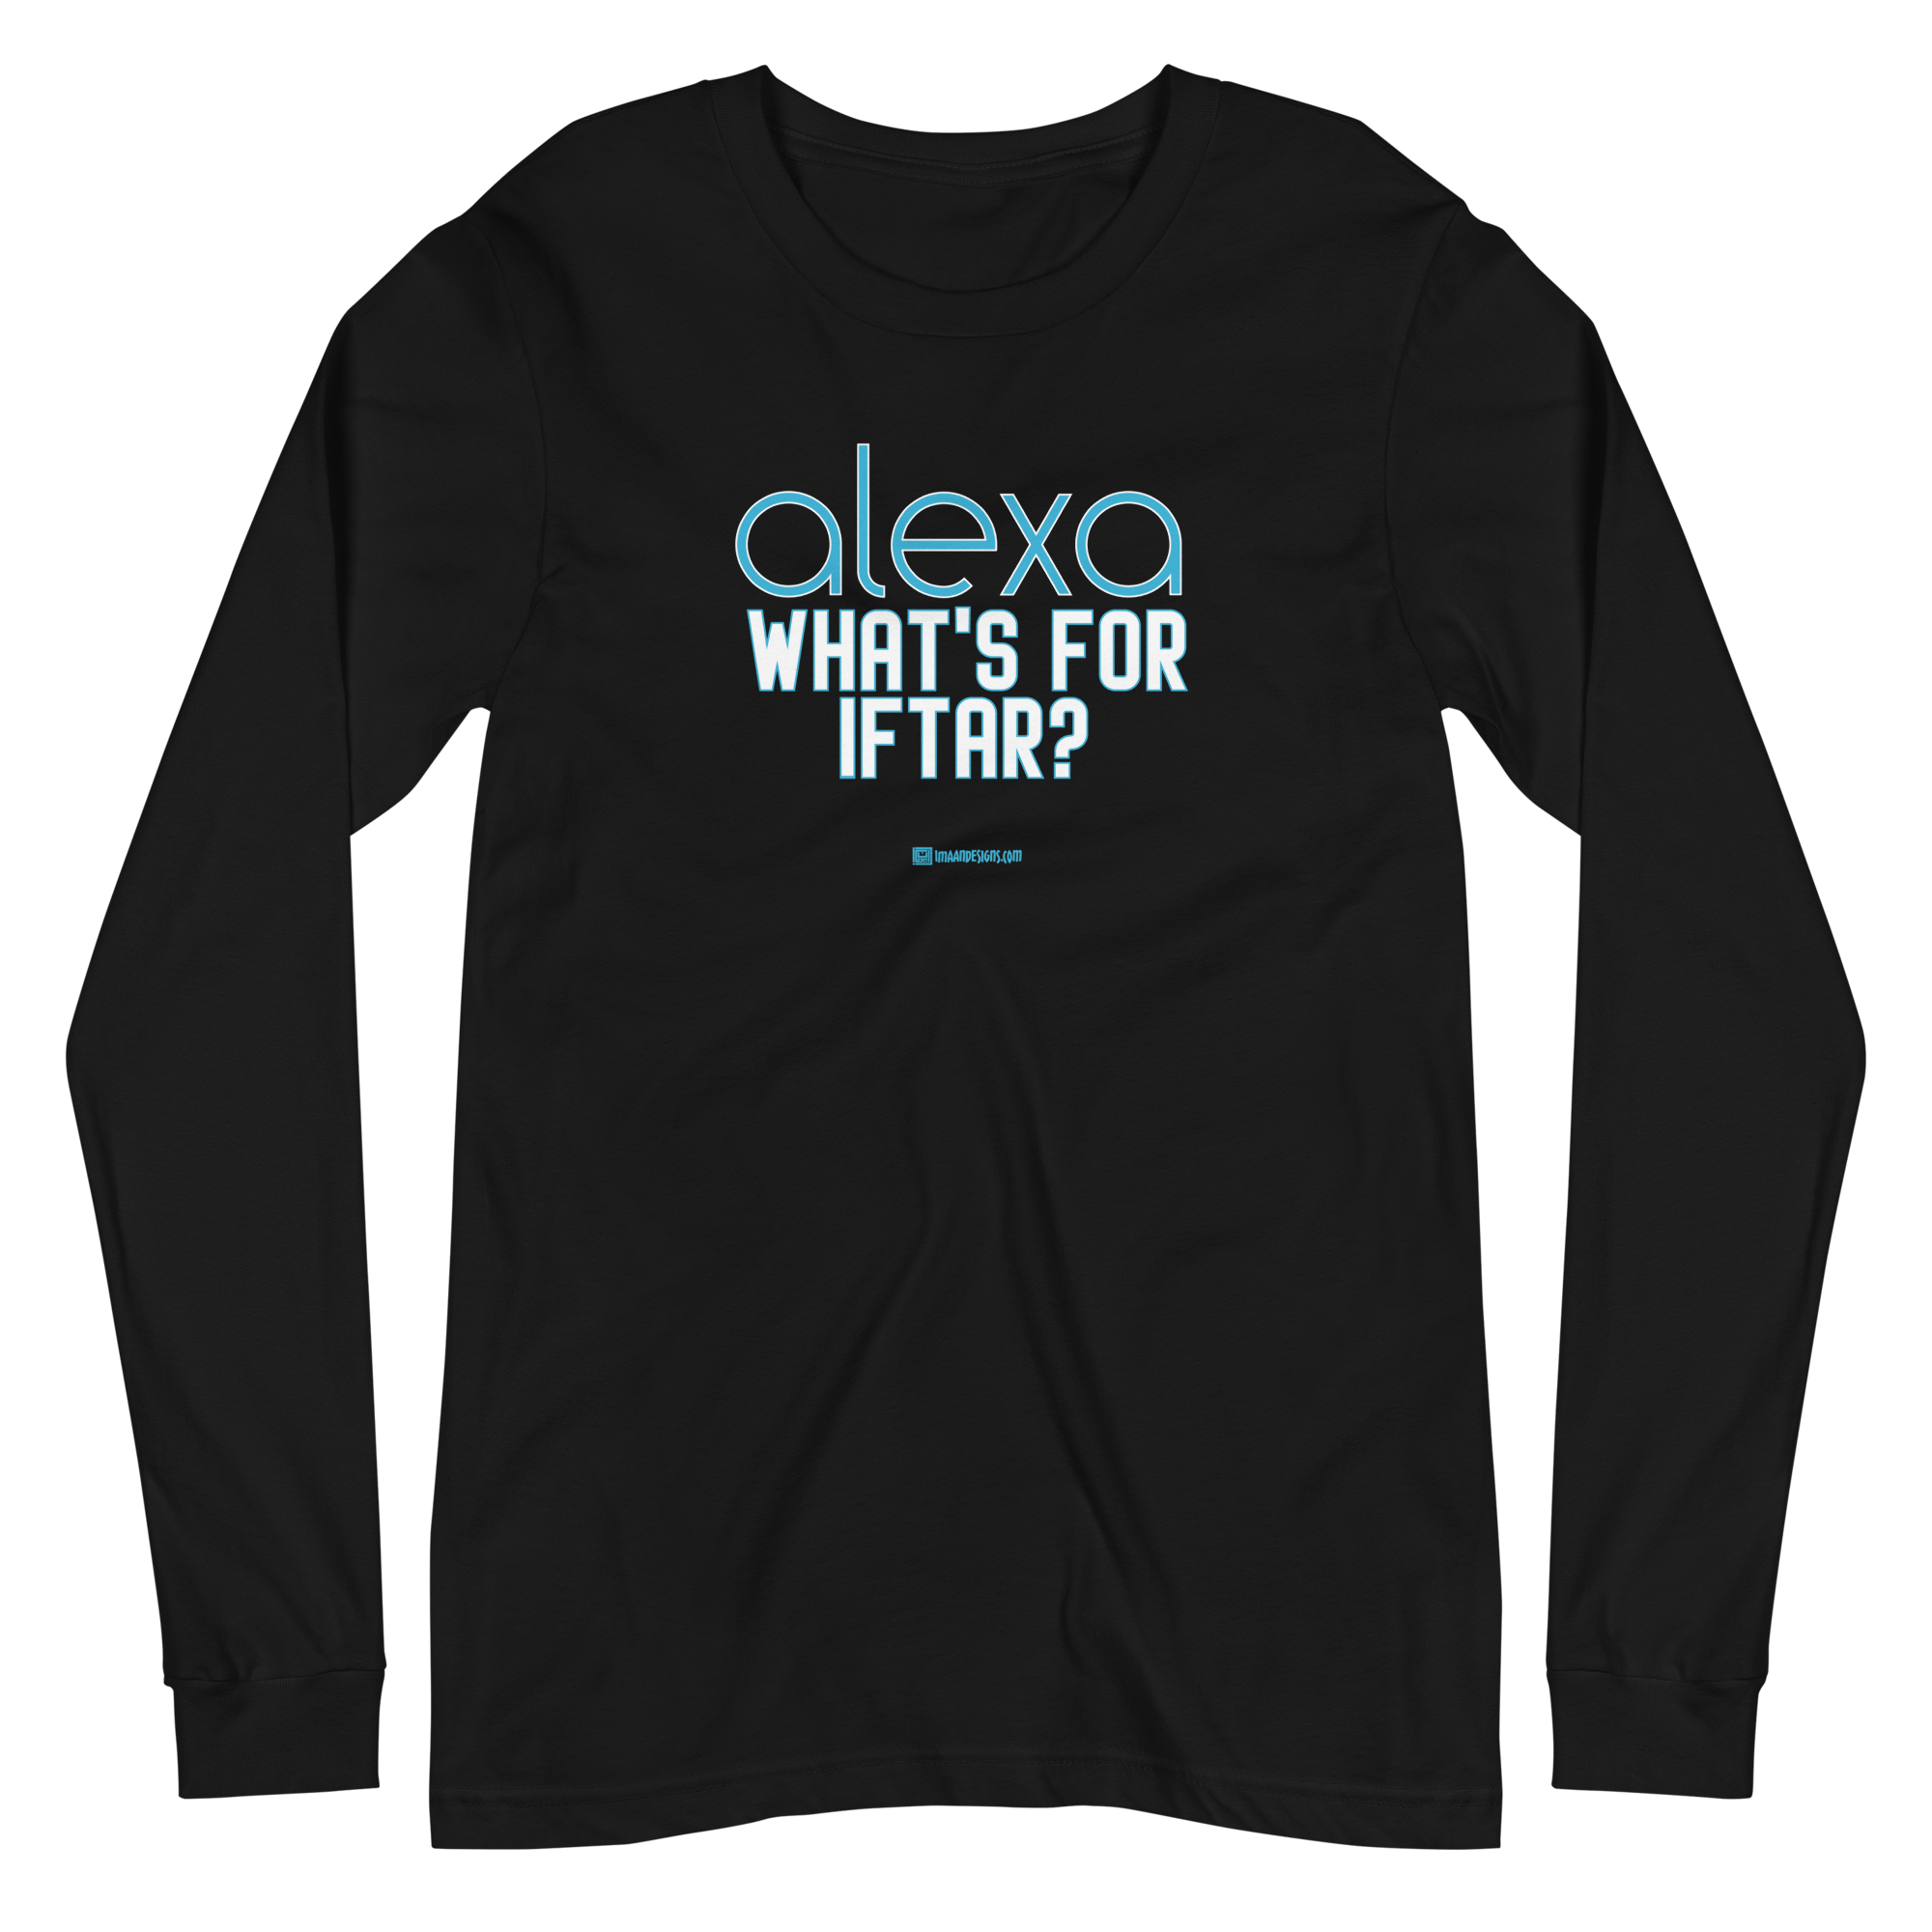 Alexa - Adult Long Sleeve